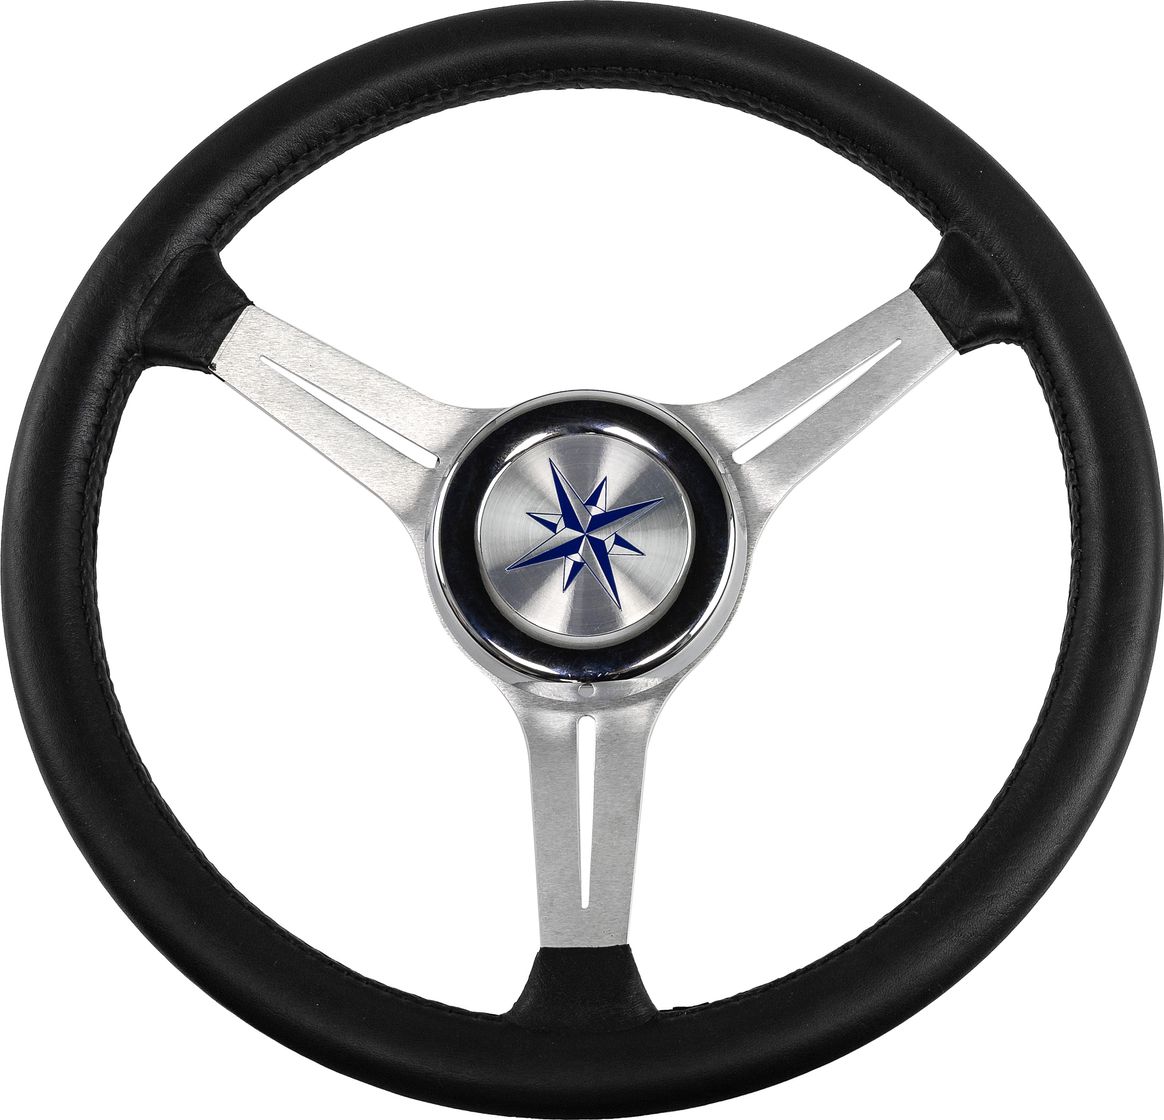 Рулевое колесо LYRA обод черный, спицы серебряные д. 370 мм VN137003-01 рулевое колесо riviera белый обод и спицы д 350 мм vn8001 08